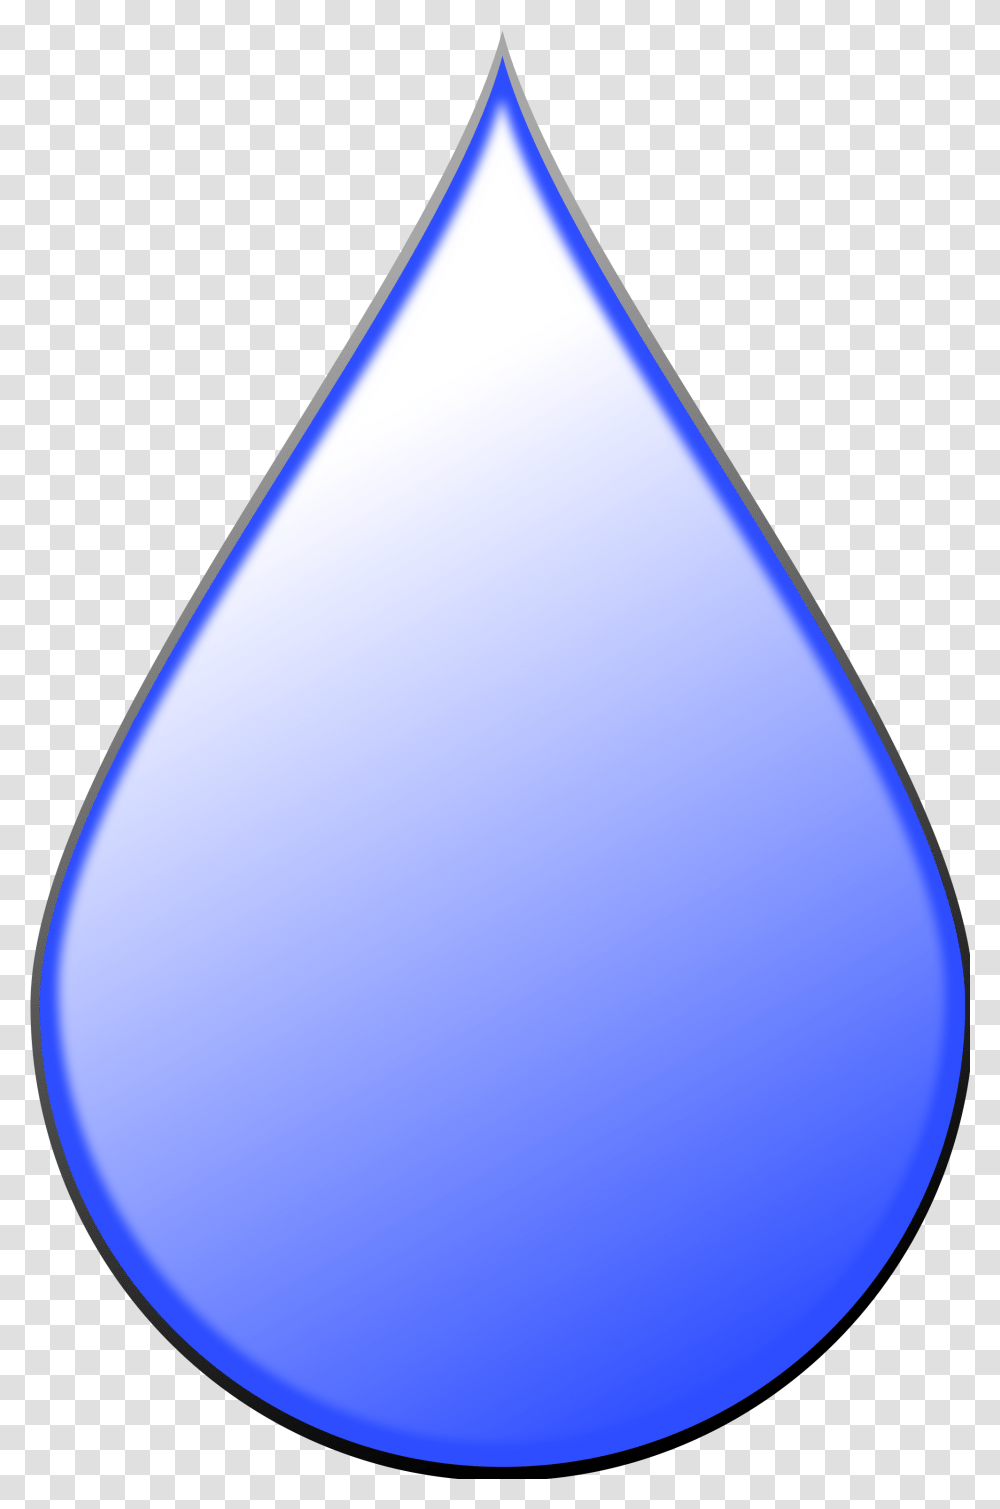 Raindrops Clipart Form Water Rain Drop Download Cartoon Rain Drop, Droplet, Plant, Balloon, Lighting Transparent Png